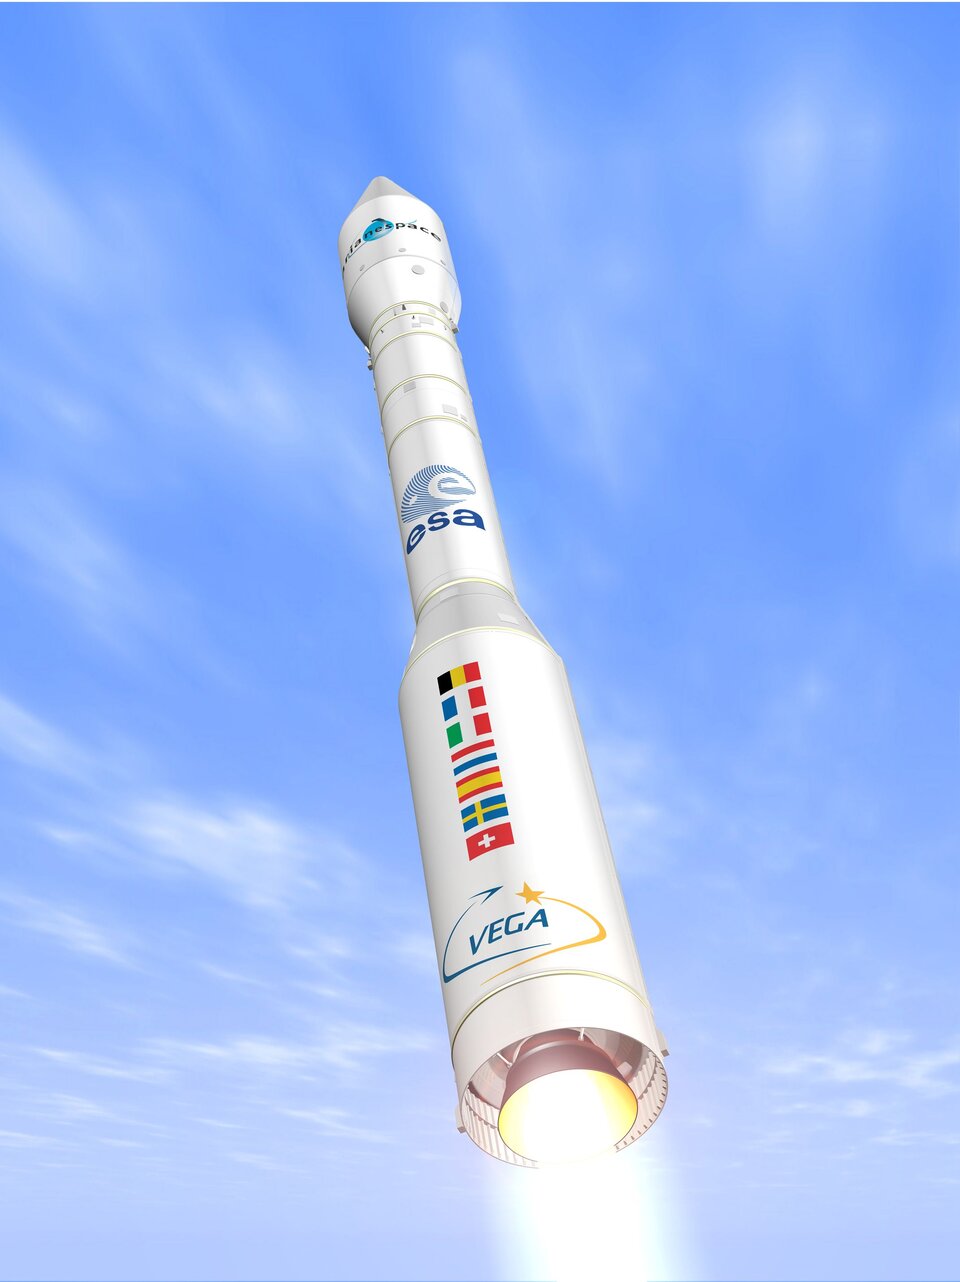 Vega’s target lift capability is 1500 kg